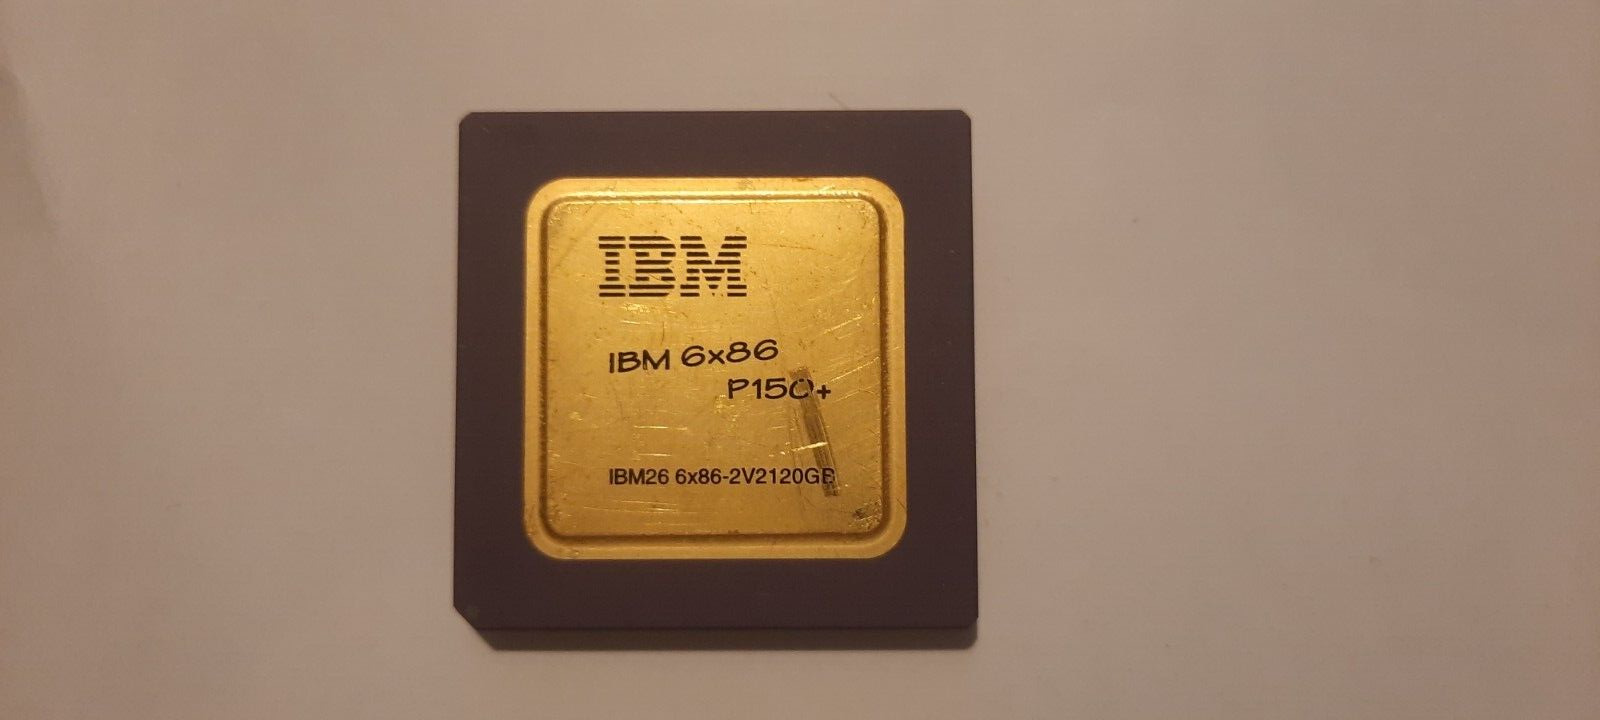 IBM 6x86 P150+ 6x86-2V2P120GB 6x86 rare round lid vintage CPU GOLD